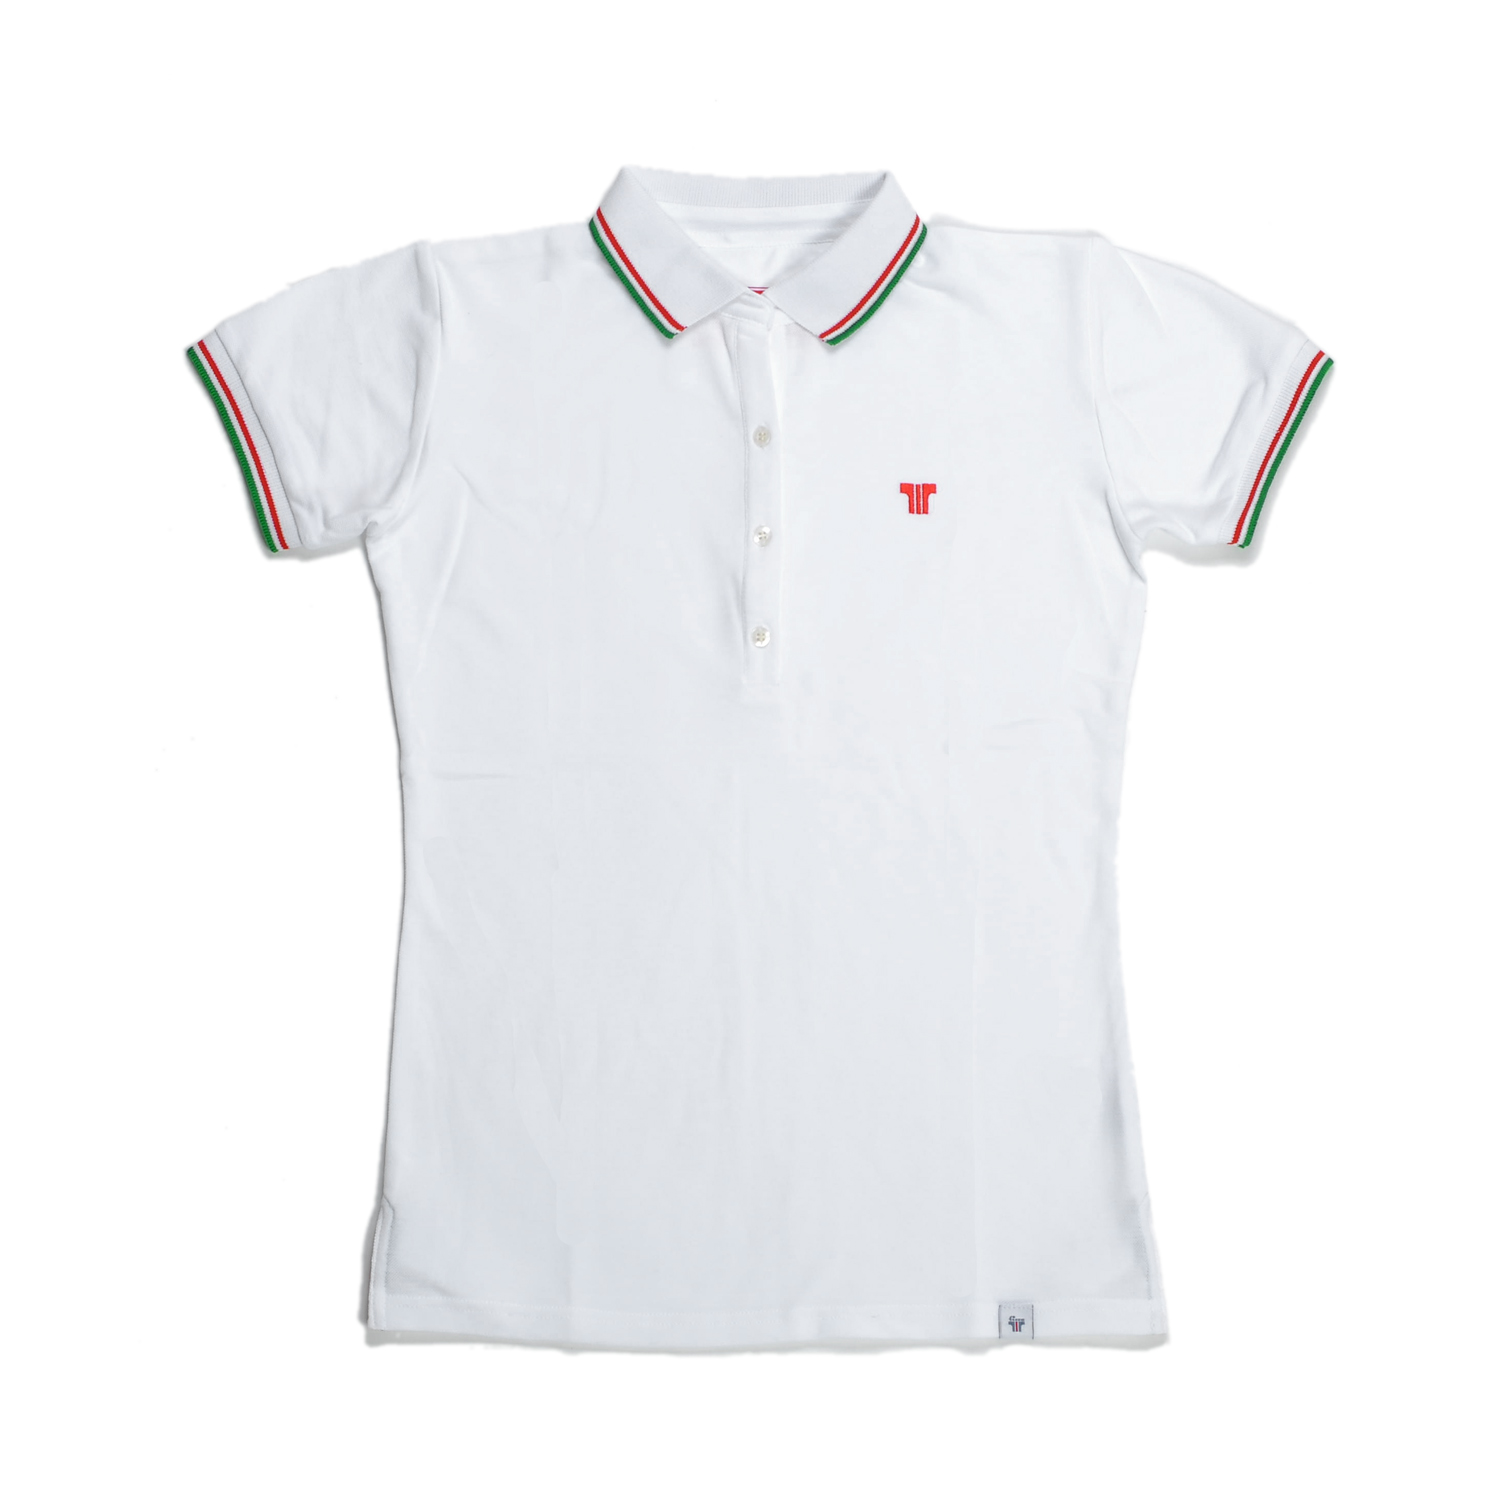 Tisza shoes - Women tennis shirt  - White-olympiad